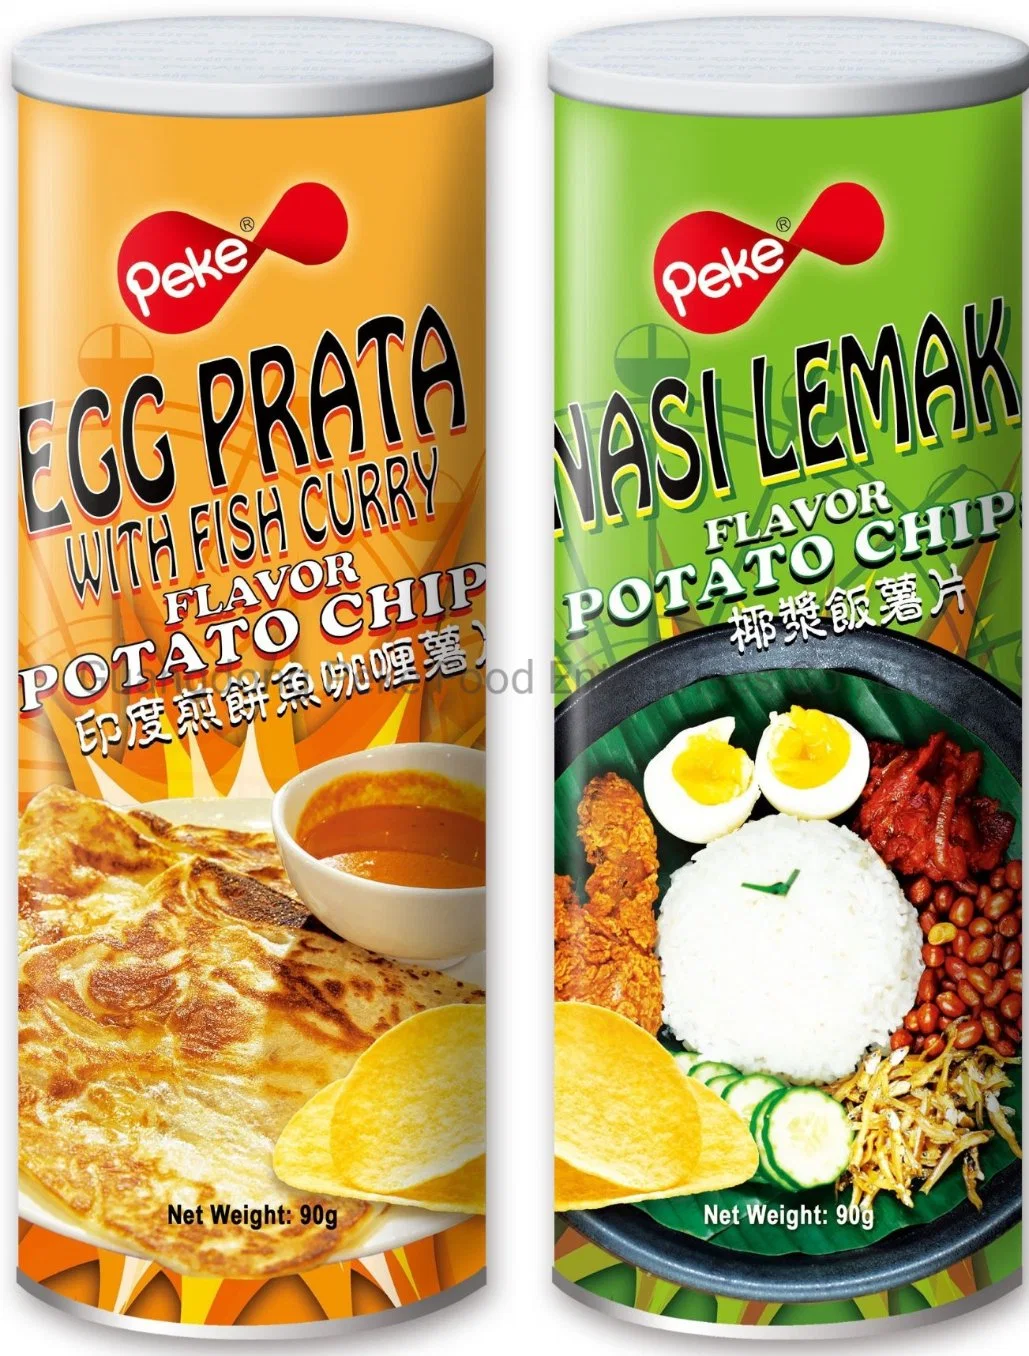 Яйцо Prata с рыбным ароматом Карри картофельные чипсы - азиатские вкусы Закуски